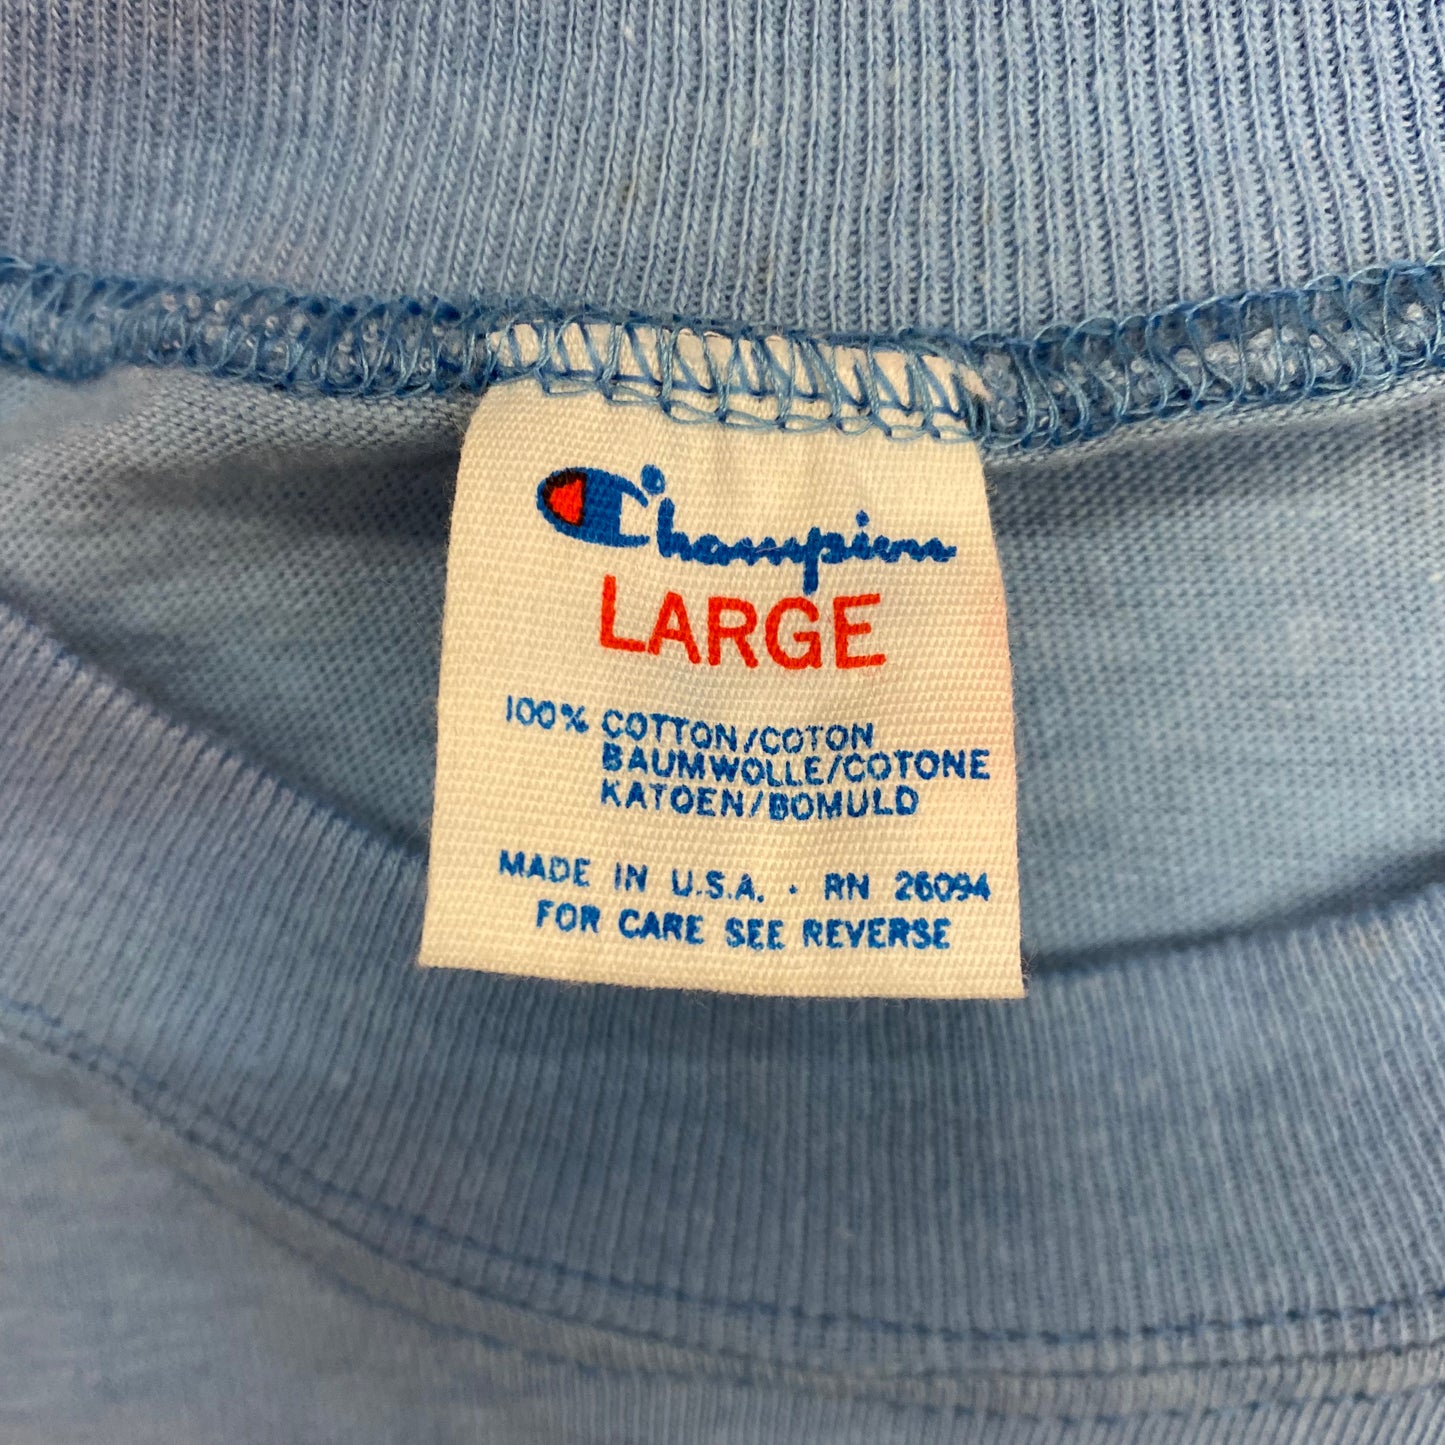 1980s Champion Canandaigua Lake Light Blue Long Sleeve - Size Large